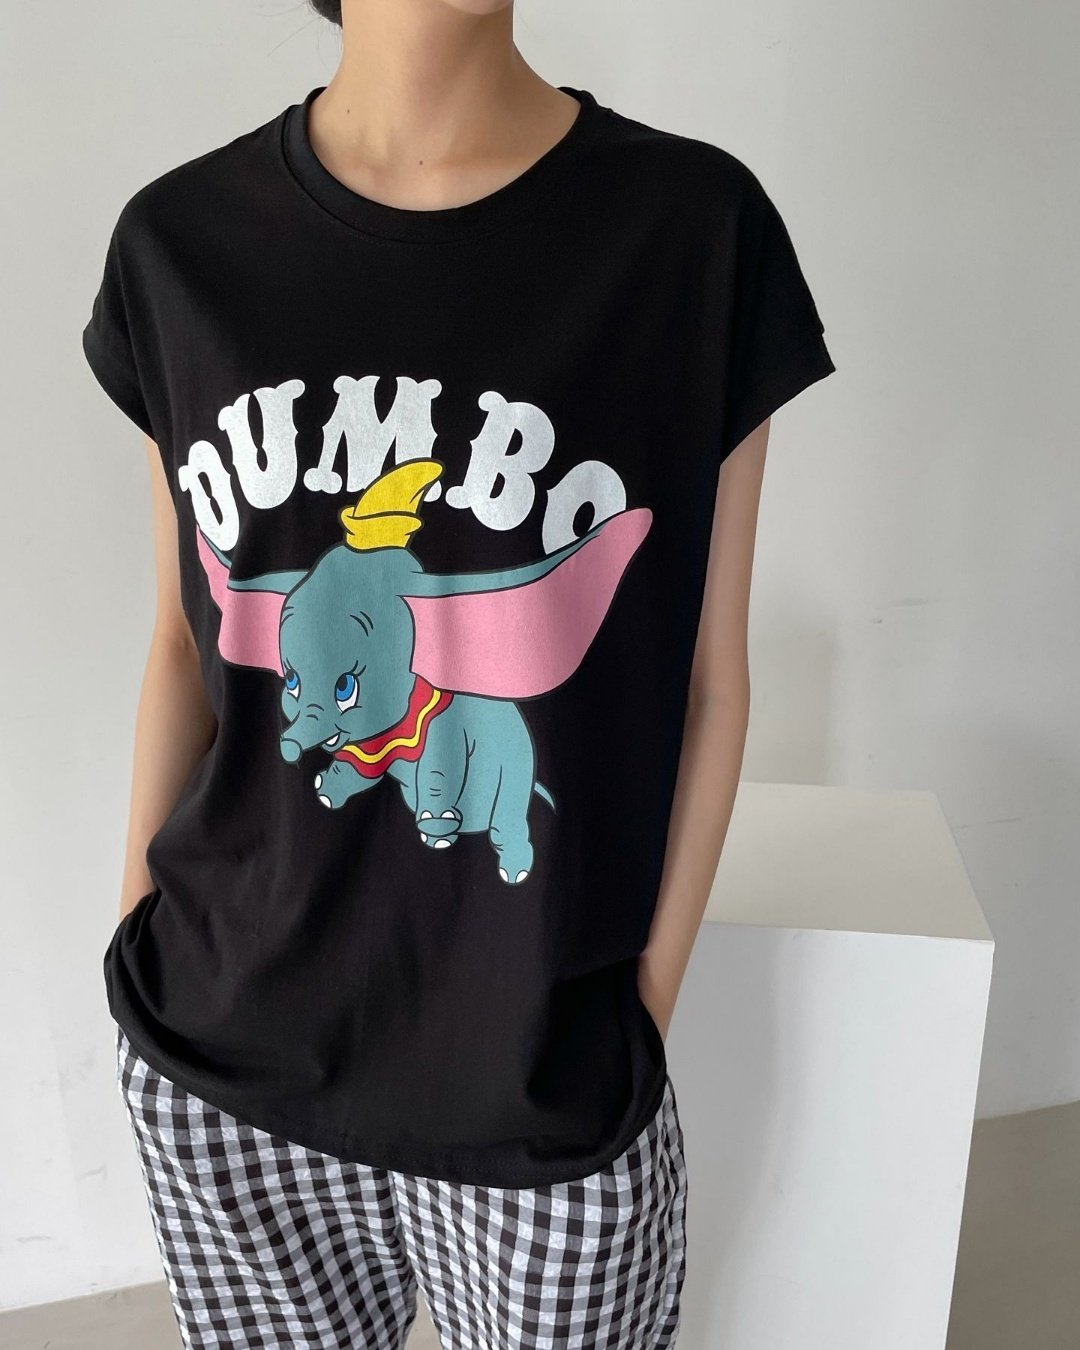 Dumbo set